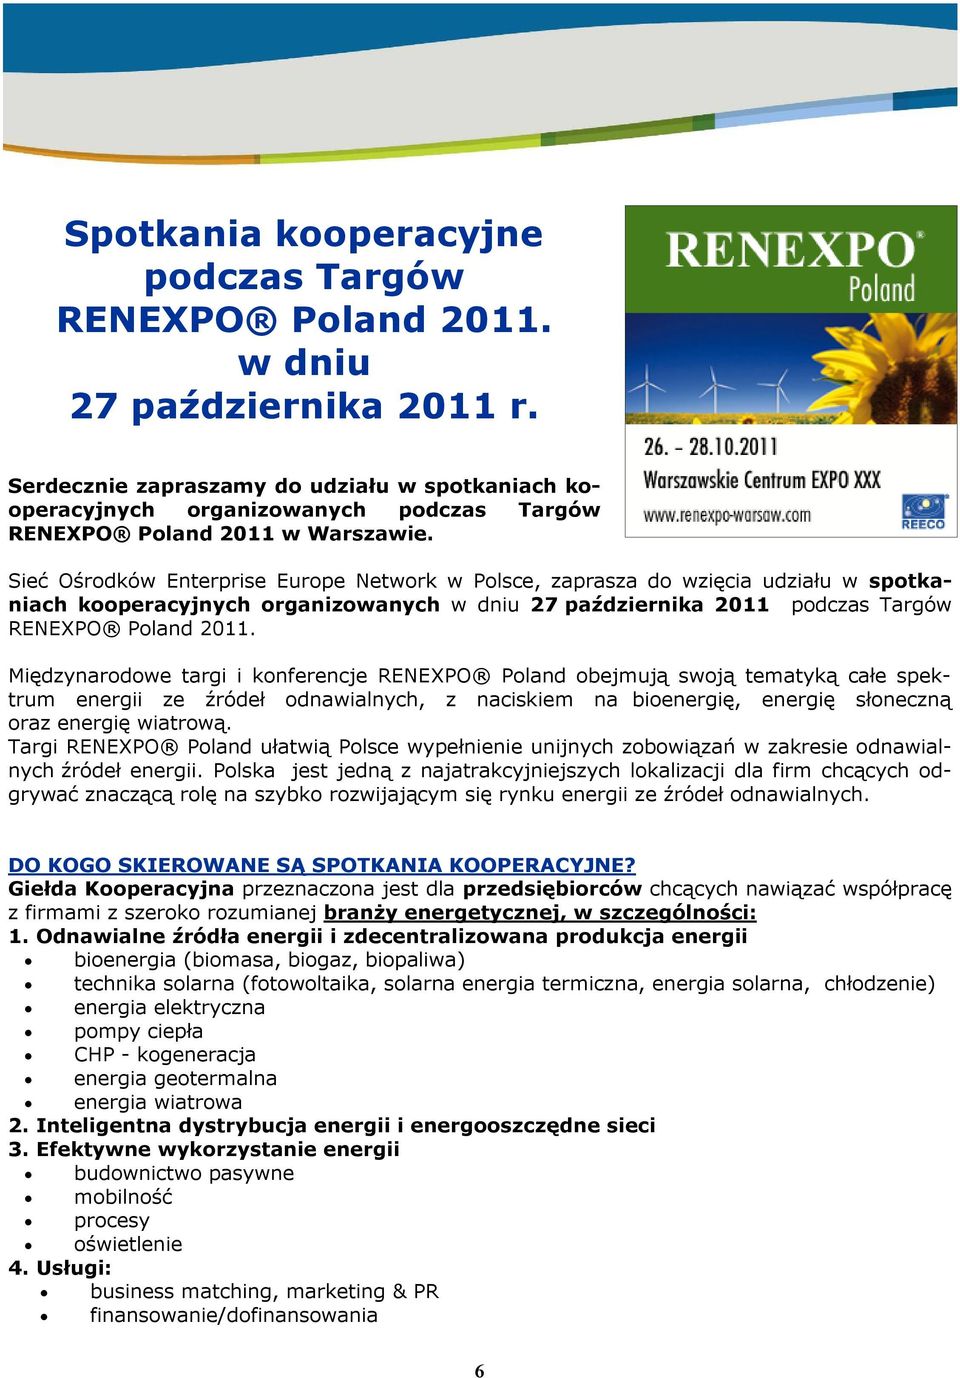 Sieć Ośrodków Enterprise Europe Network w Polsce, zaprasza do wzięcia udziału w spotkaniach kooperacyjnych organizowanych w dniu 27 października 2011 podczas Targów RENEXPO Poland 2011.